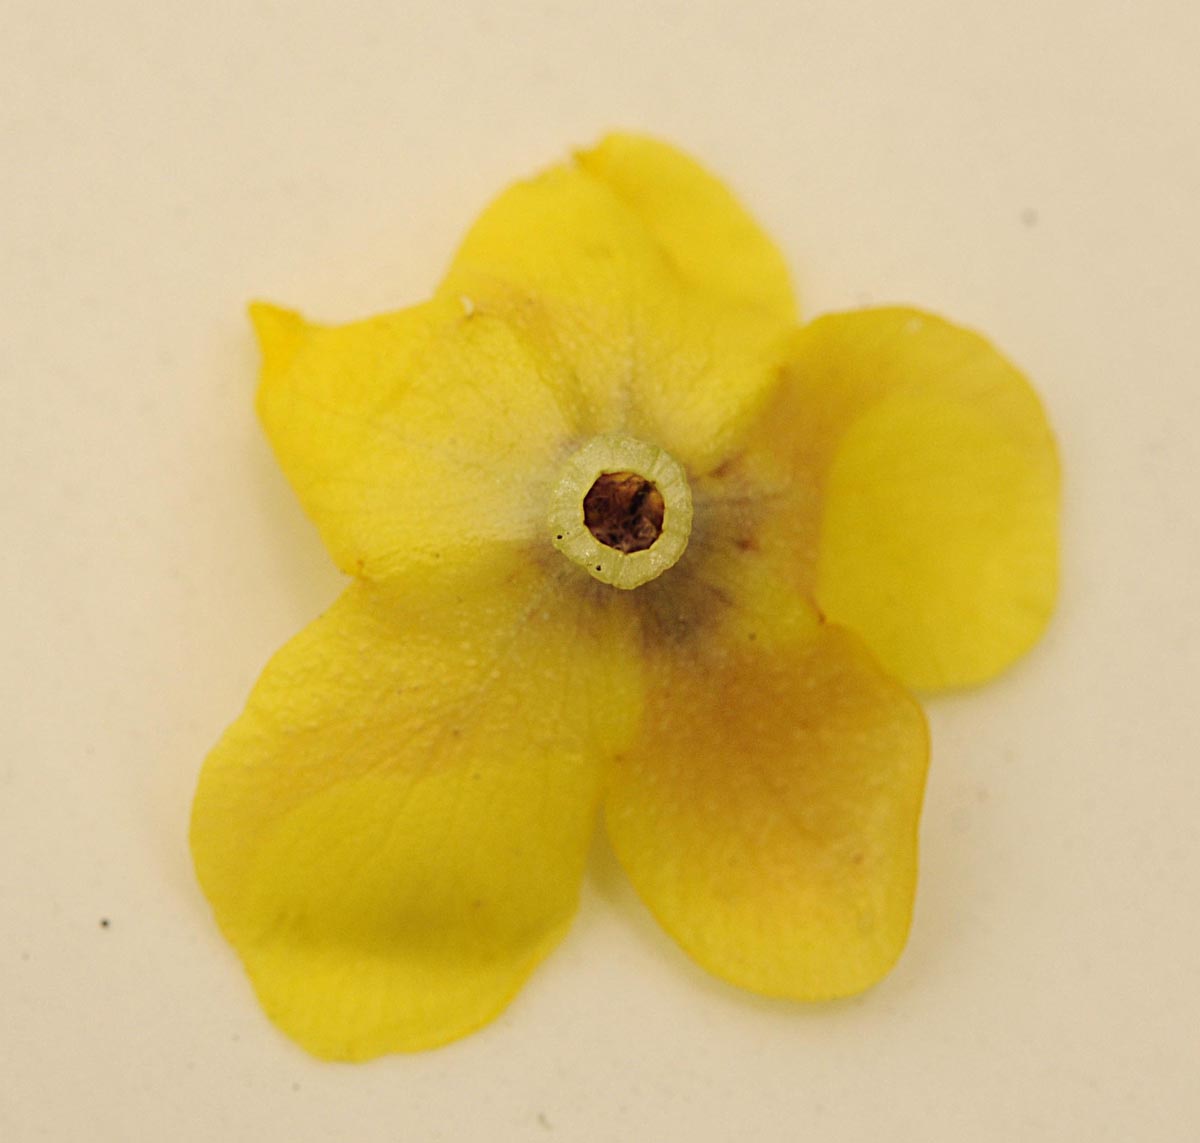 Verbascum blattaria / Verbasco polline